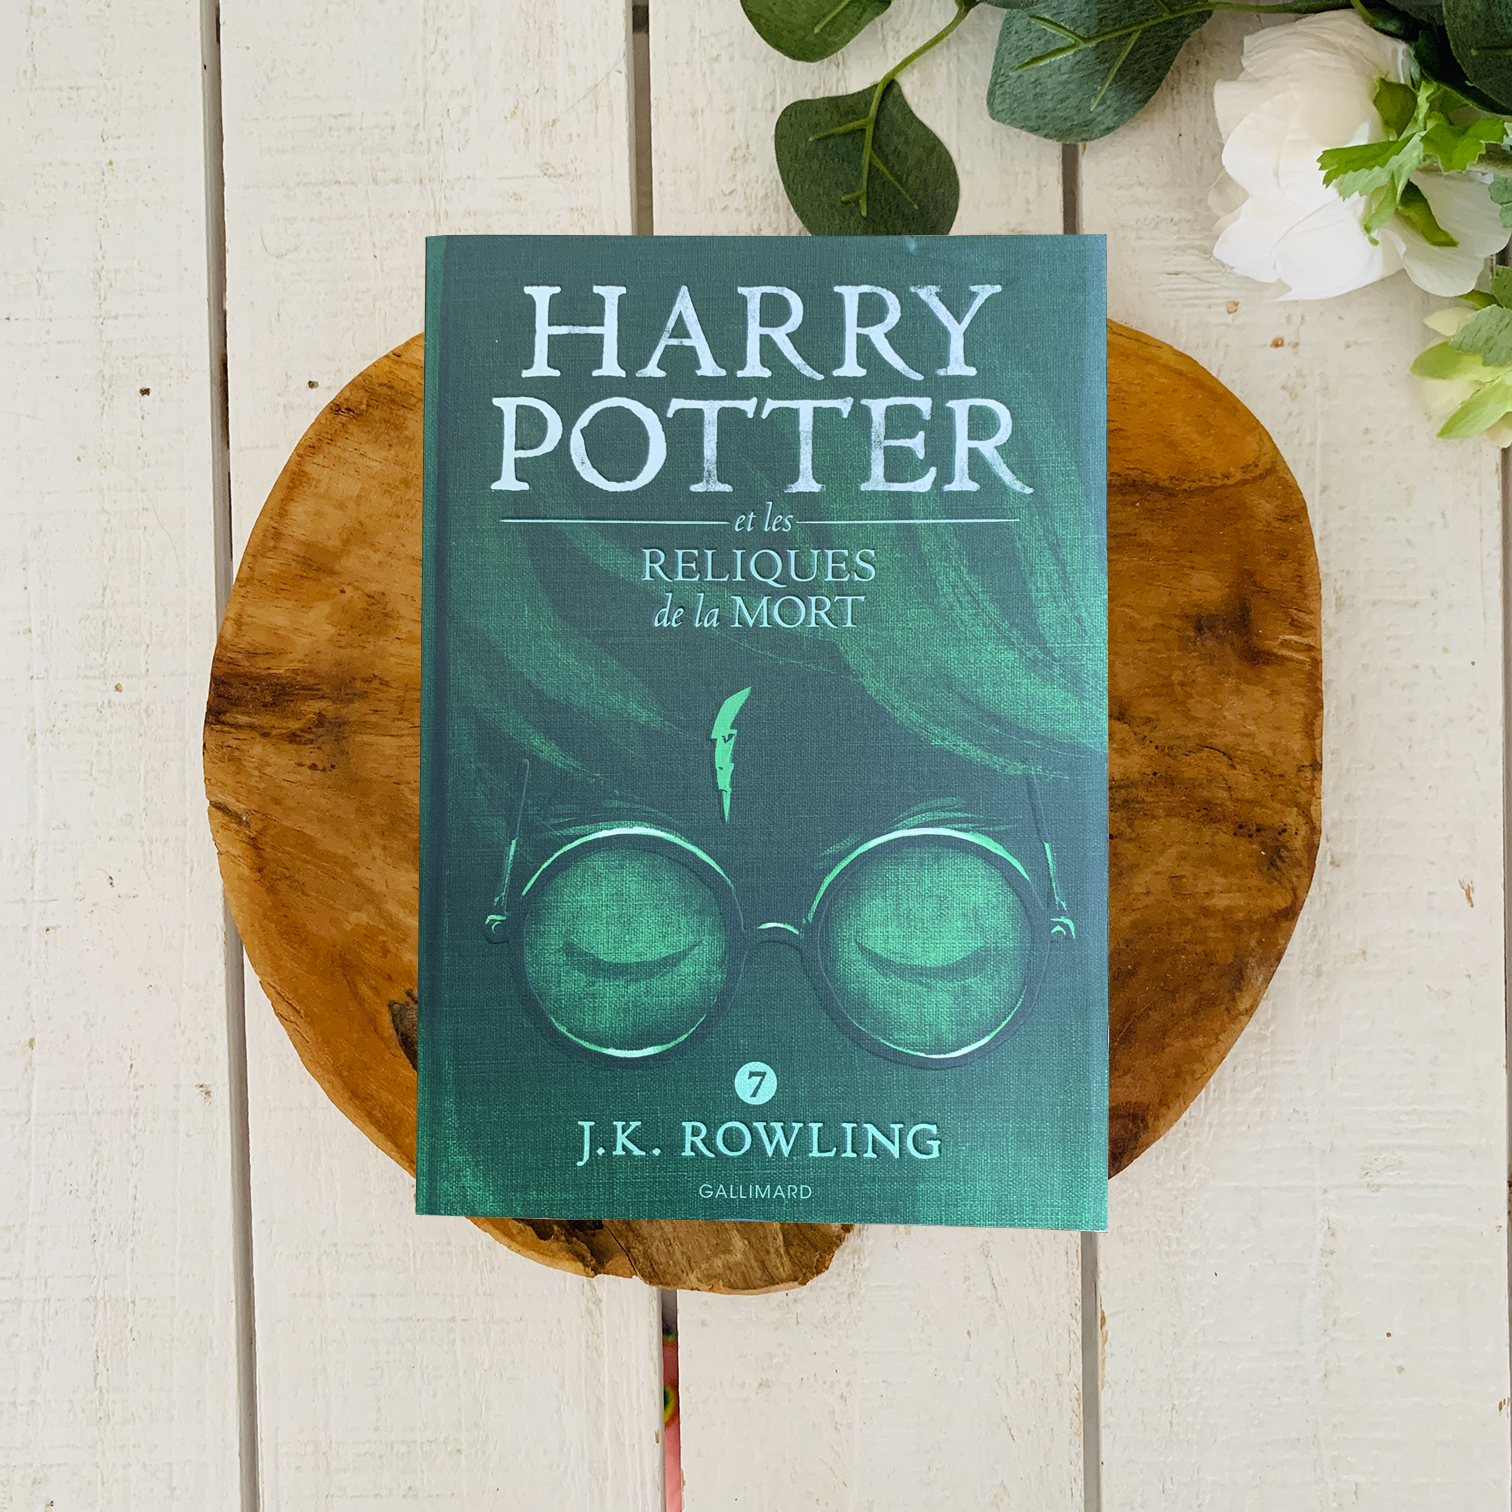 Harry potter et les reliques de la mort - J. K. Rowling